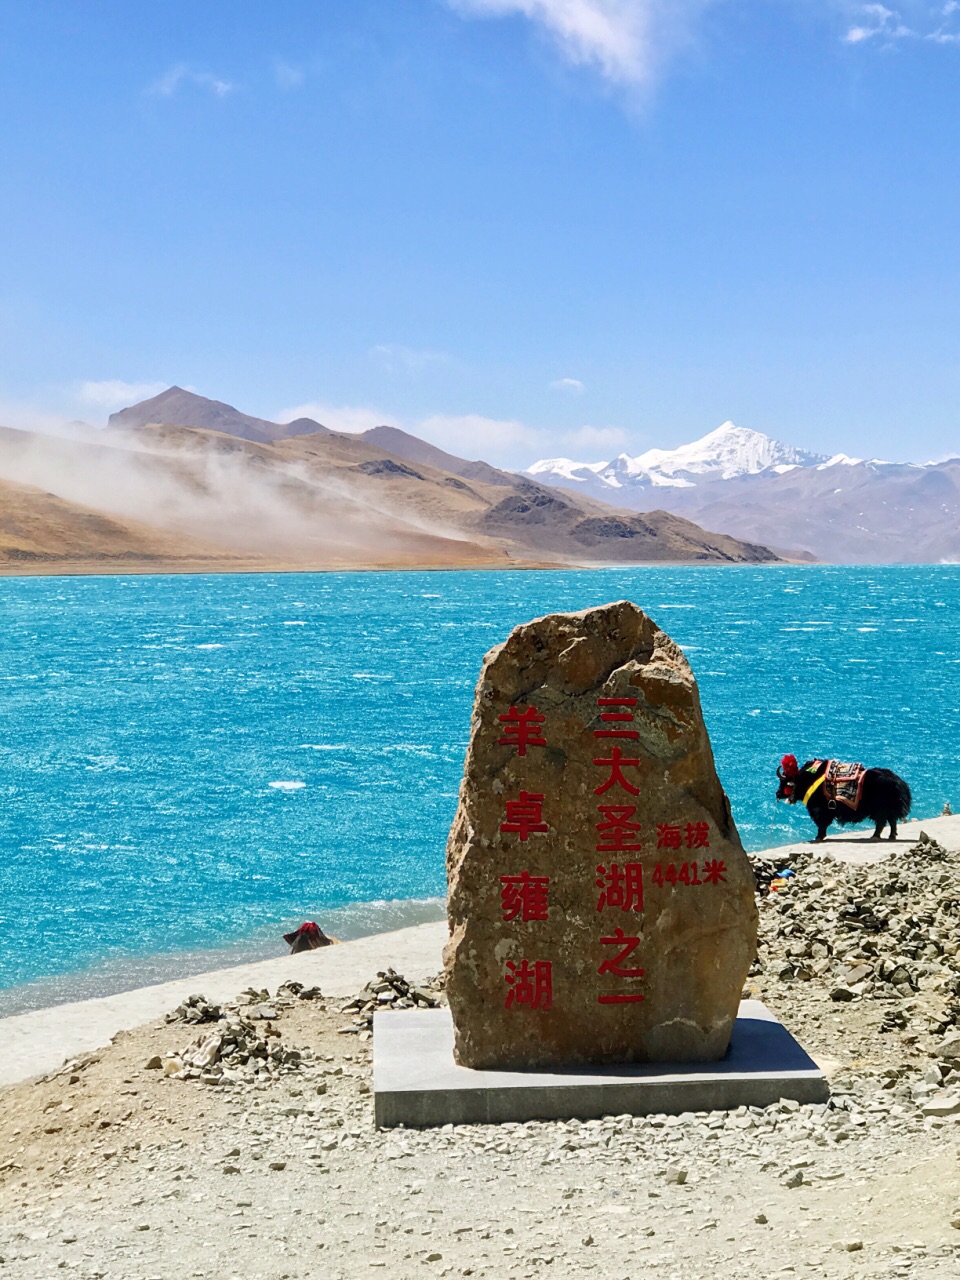 羊卓雍措,藏语意为"天鹅池",是西藏三大圣湖之一,也称羊卓雍湖(当地